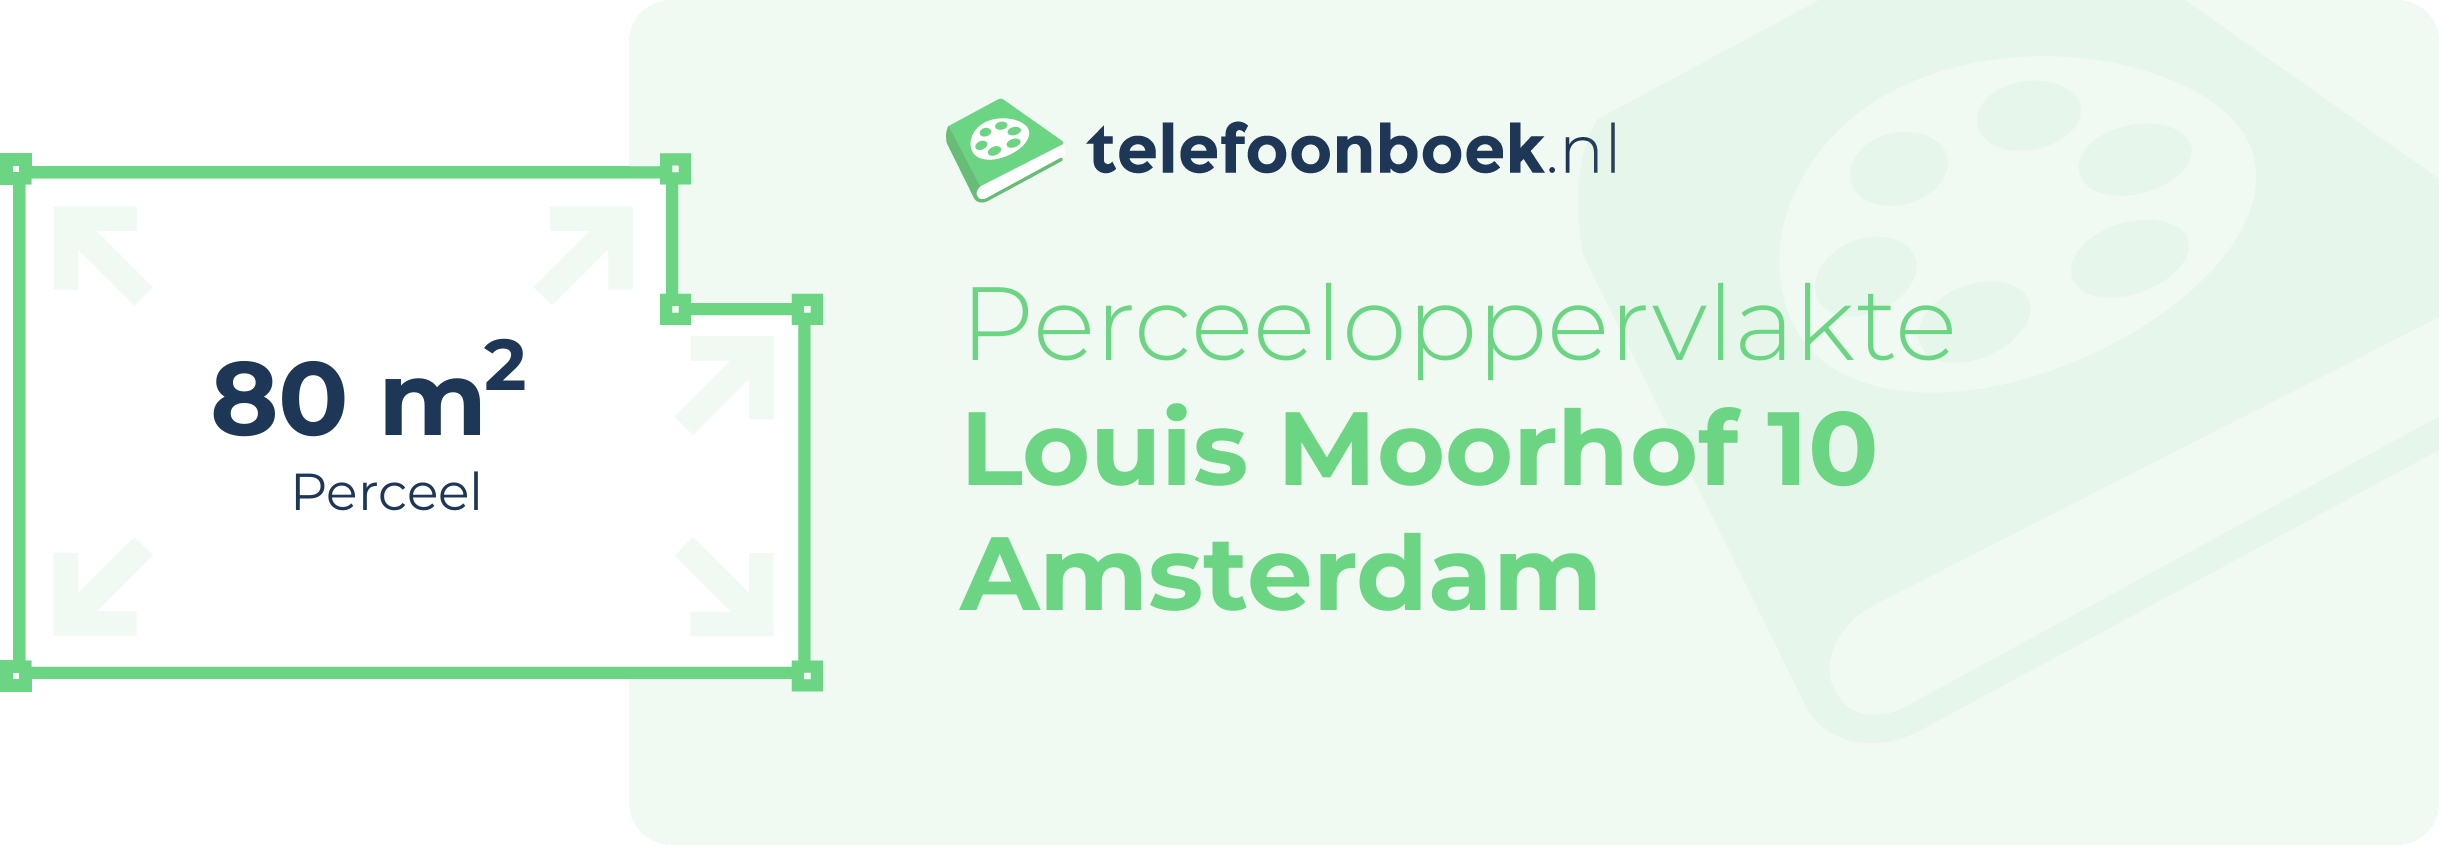 Perceeloppervlakte Louis Moorhof 10 Amsterdam